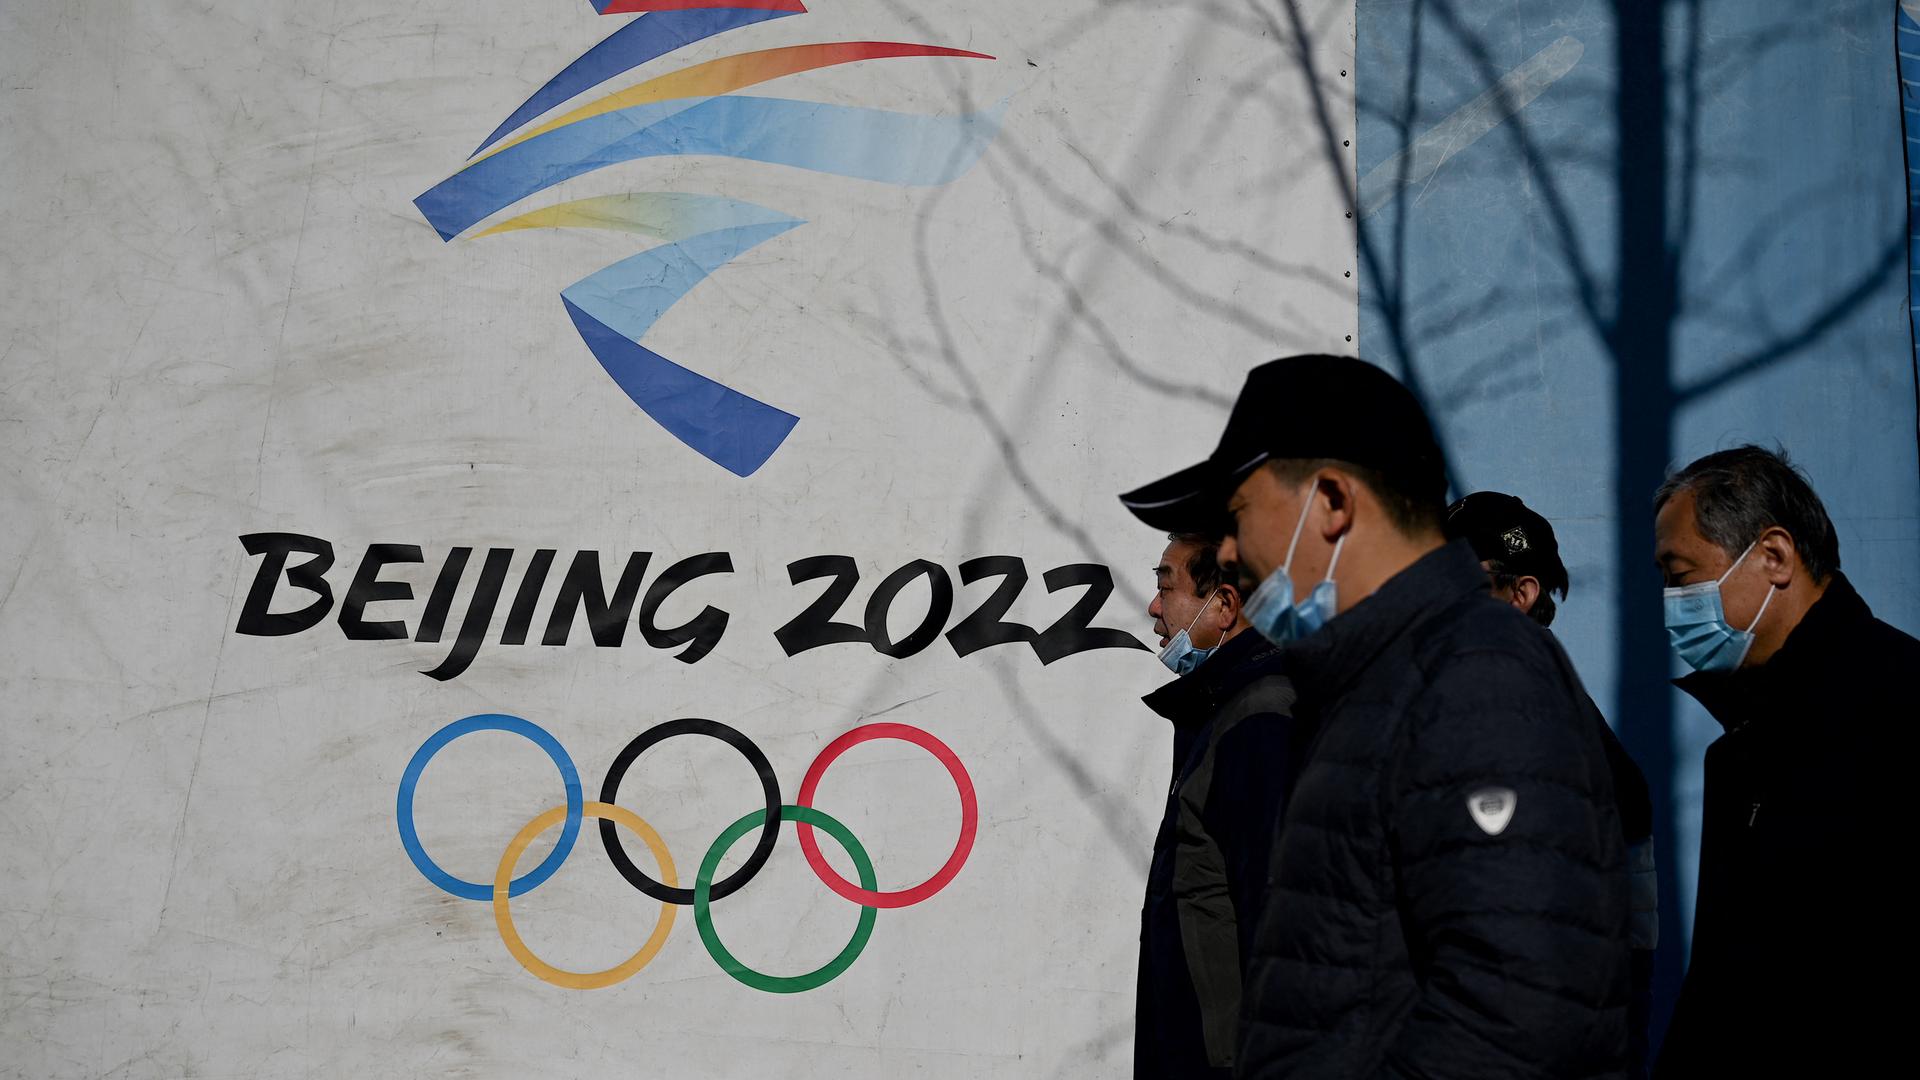 Das Logo von den Olympischen Winter-Spielen